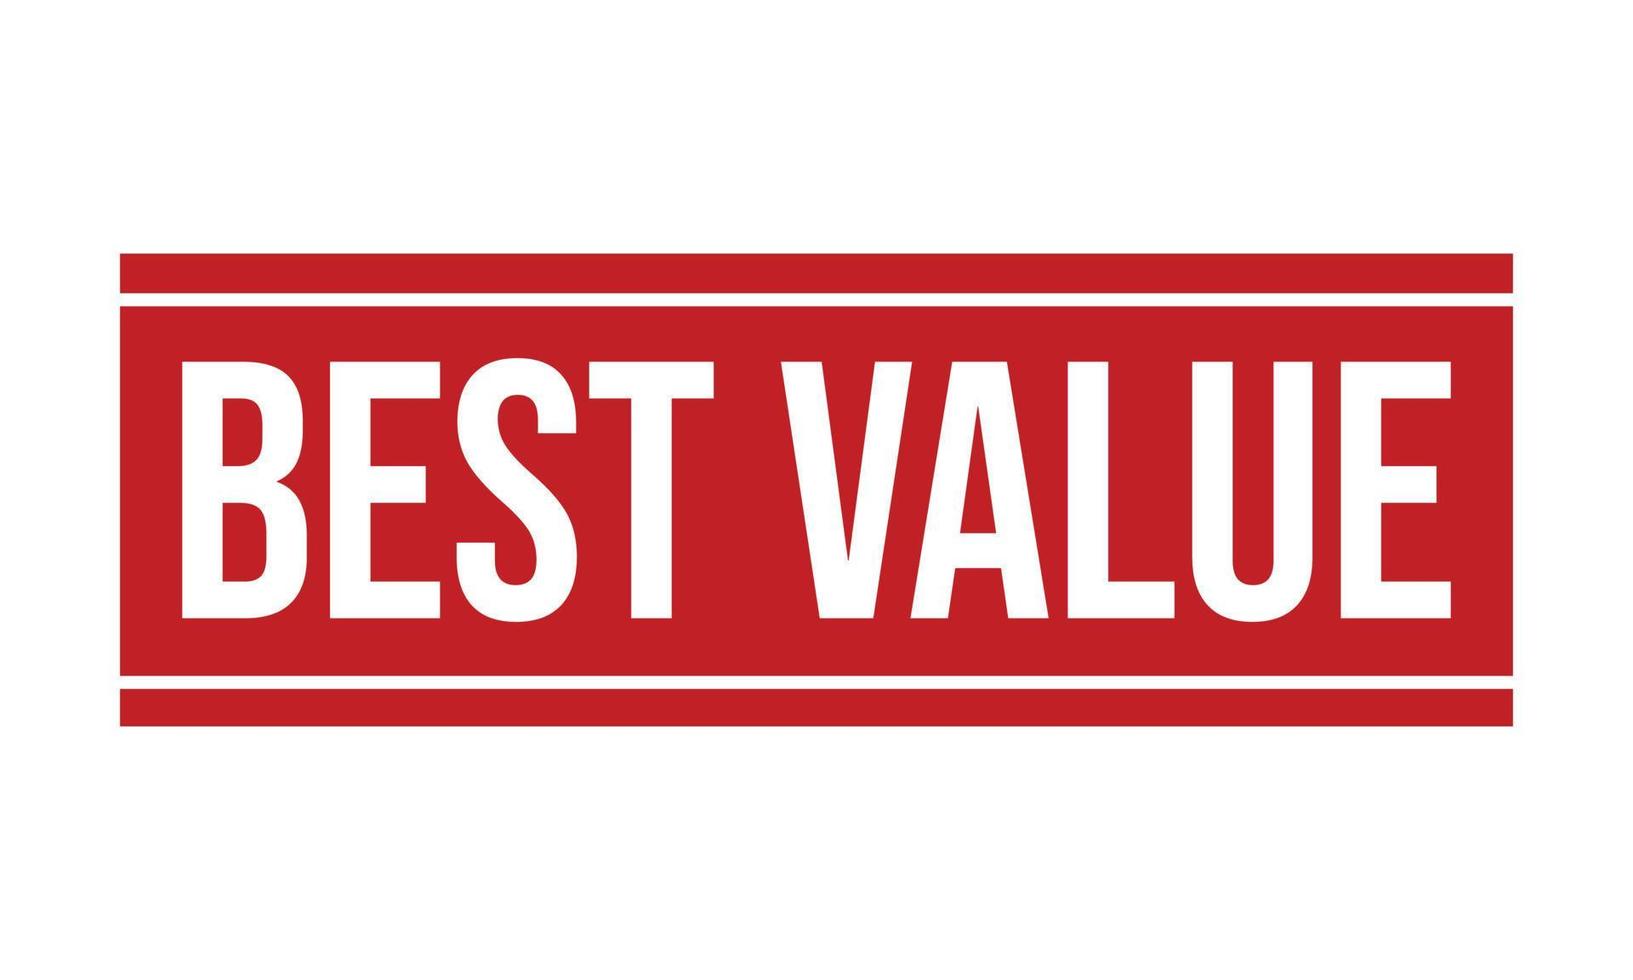 Best Value Rubber Grunge Stamp Seal Vector Illustration